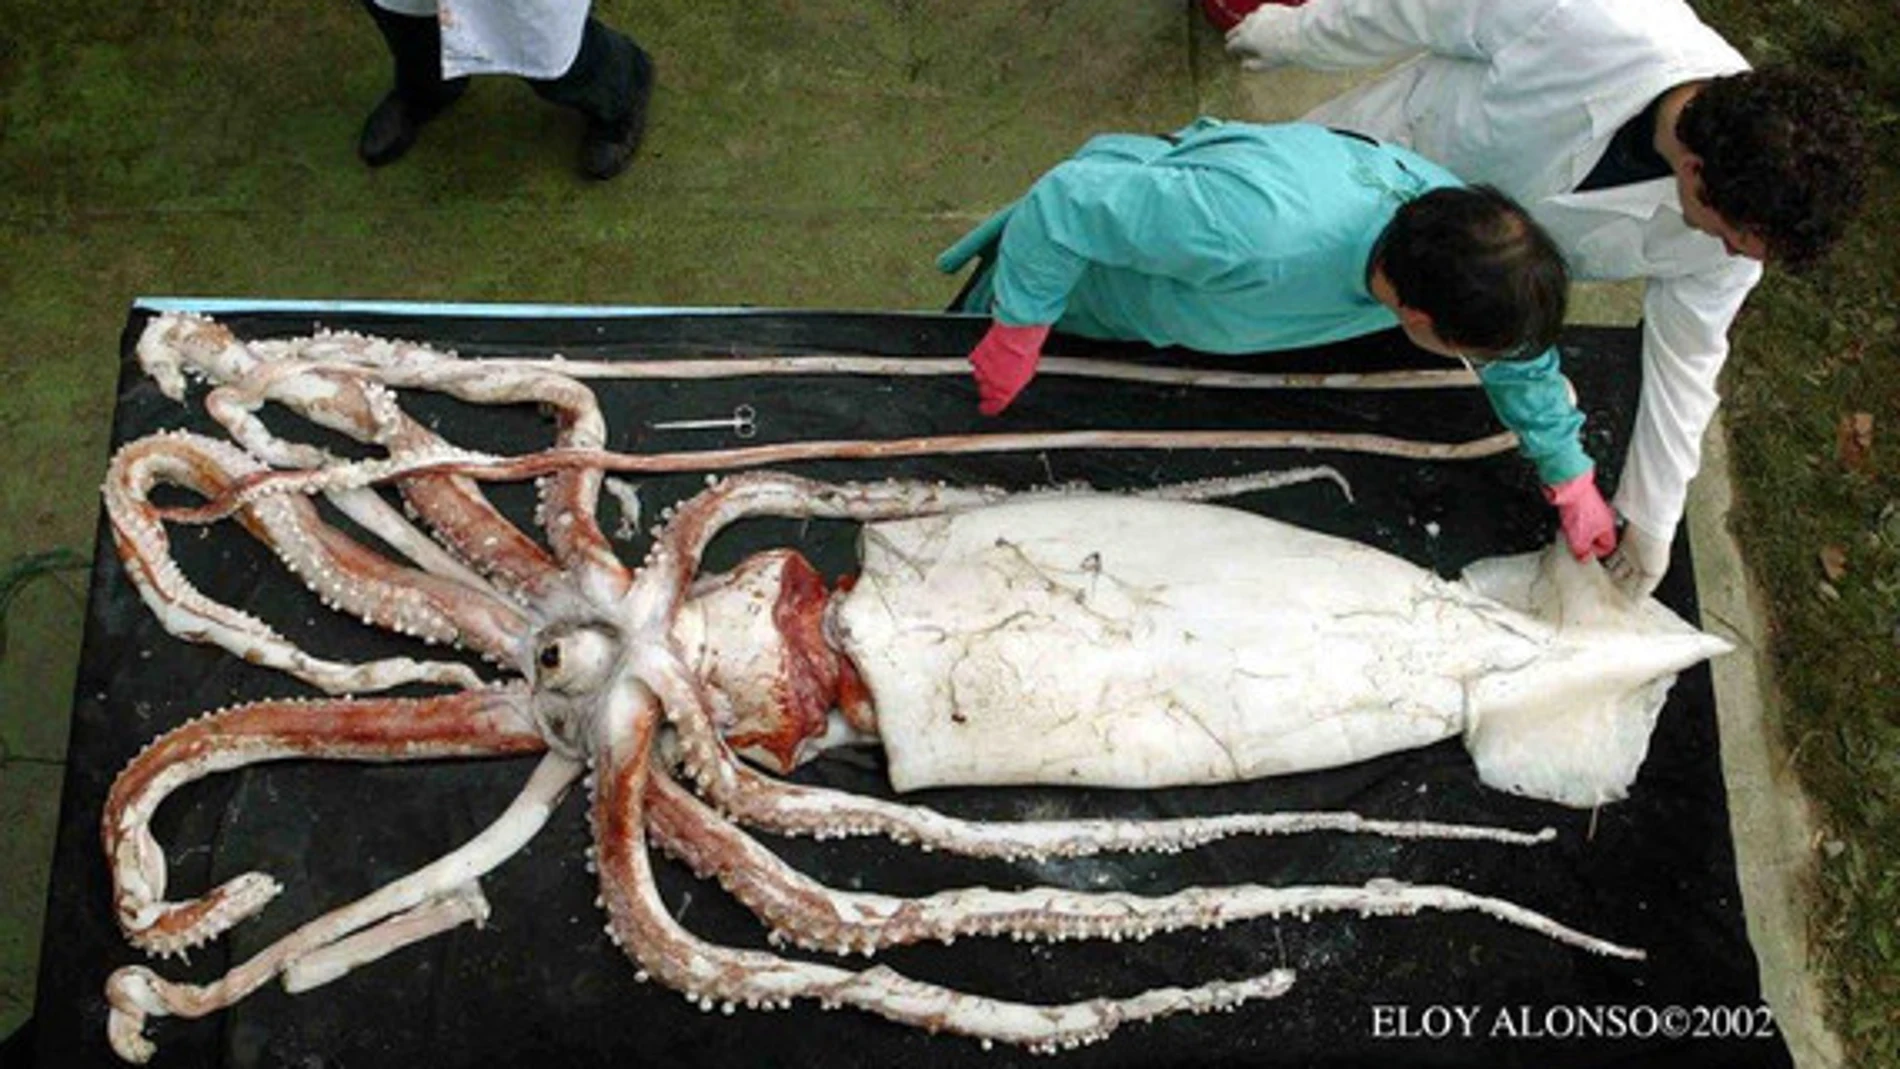 Ejemplar de calamar gigante hembra capturado en las costas de Asturias